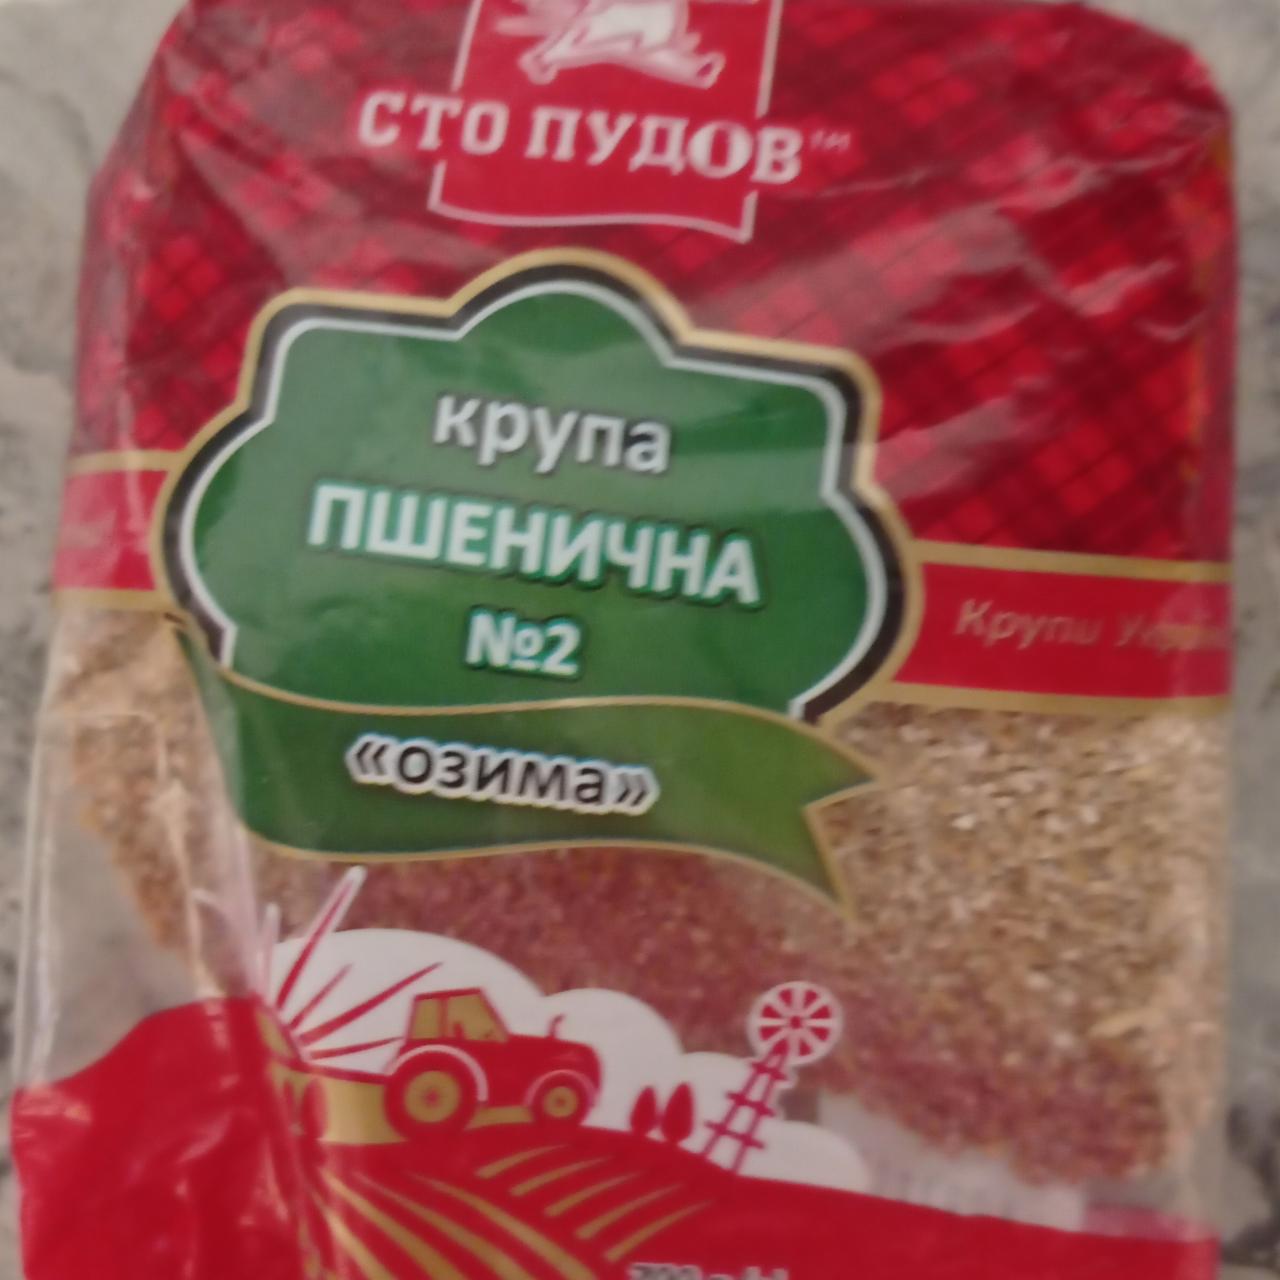 Фото - Крупа пшеничная №2 Озима Сто Пудов